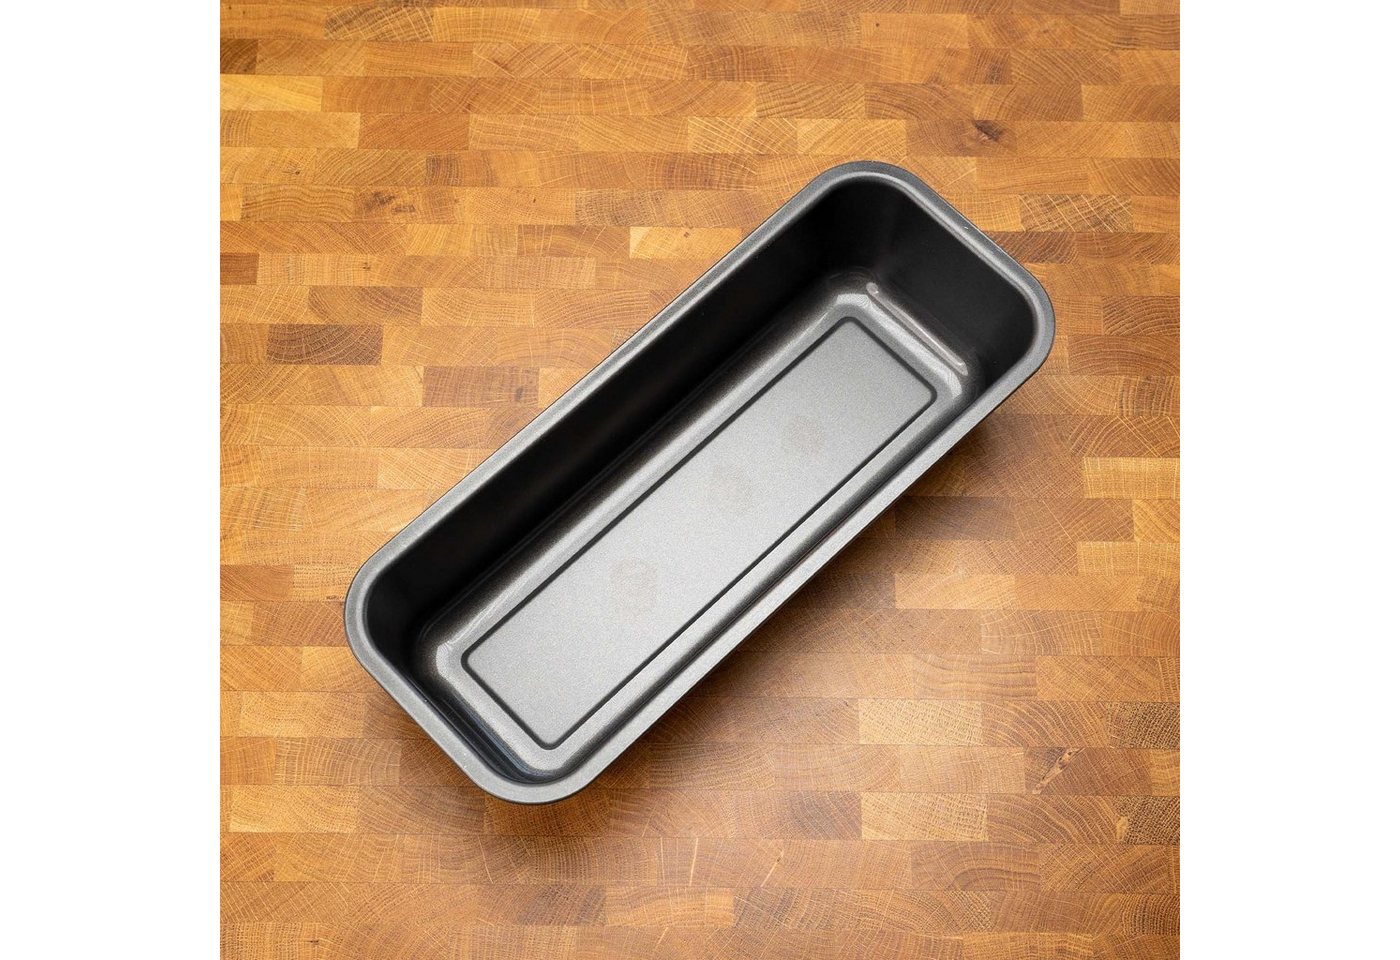 Mixcover Küchenmaschinen-Adapter Kastenform Königskuchenform Brotbackform Kuchenform mit Antihaftbeschichtung 32 cm von Mixcover